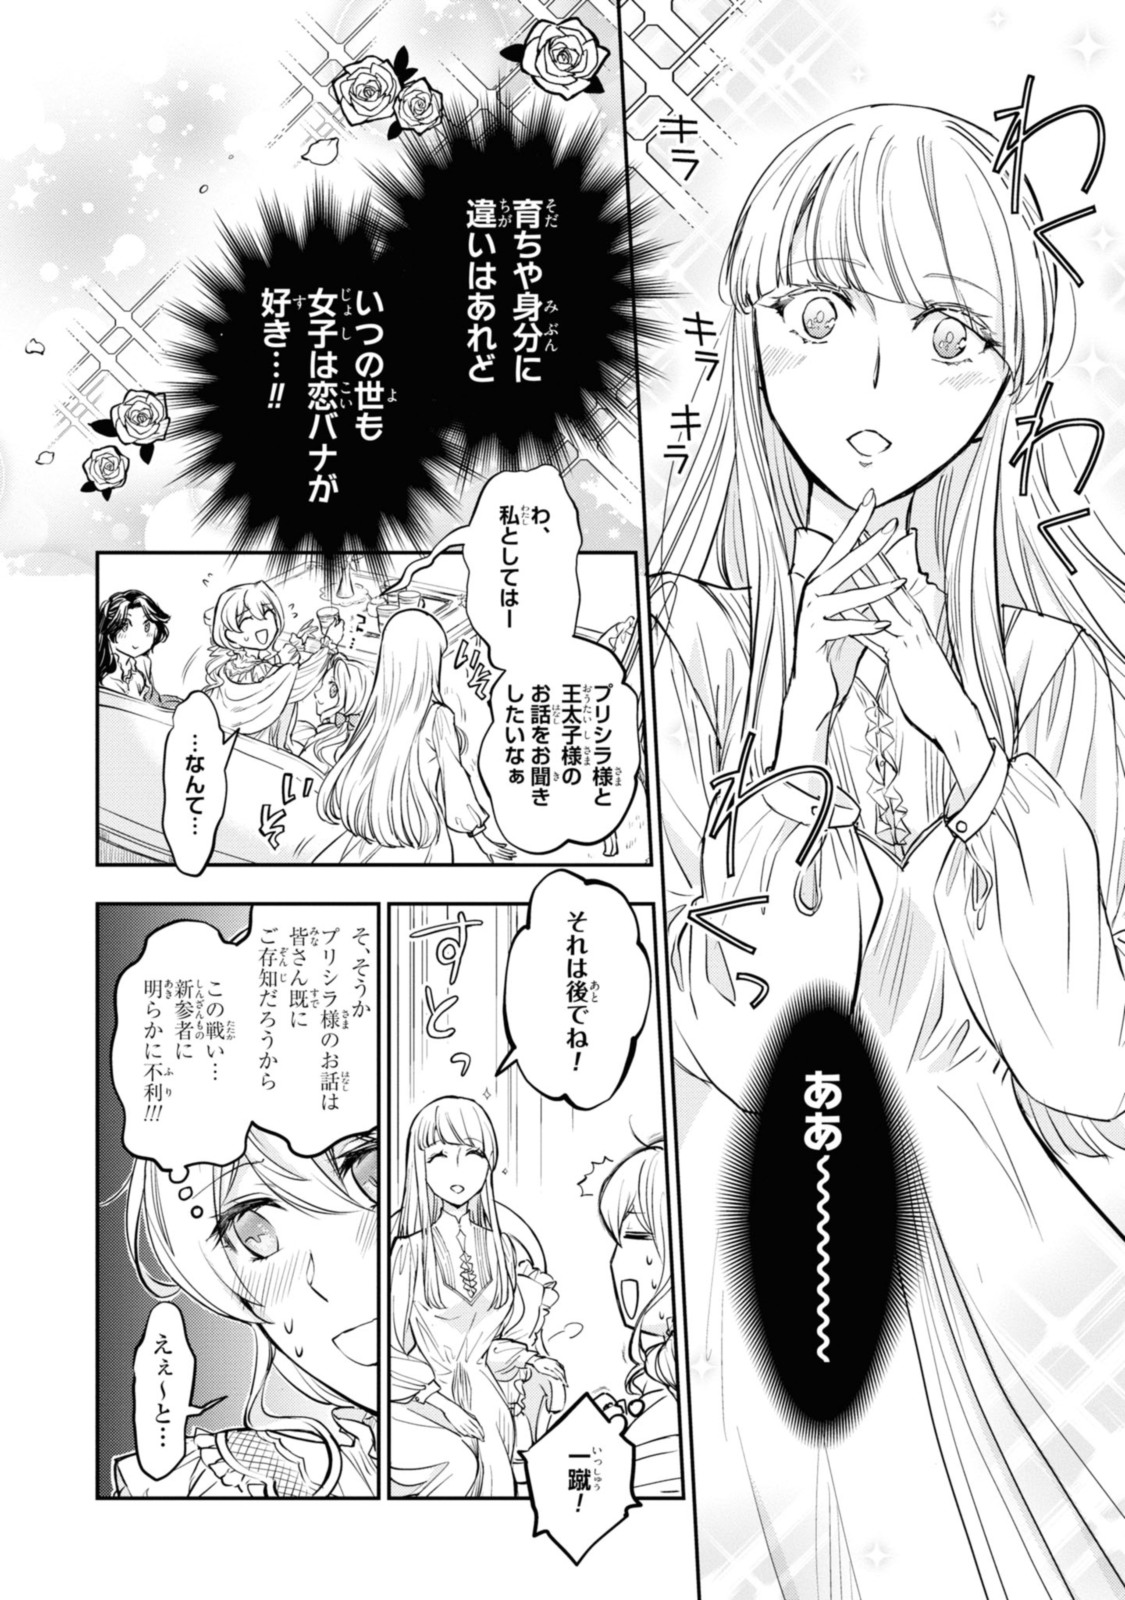 Sakkon no Cinderella wa Kutsu wo Otosanai. - Chapter 12.3 - Page 2